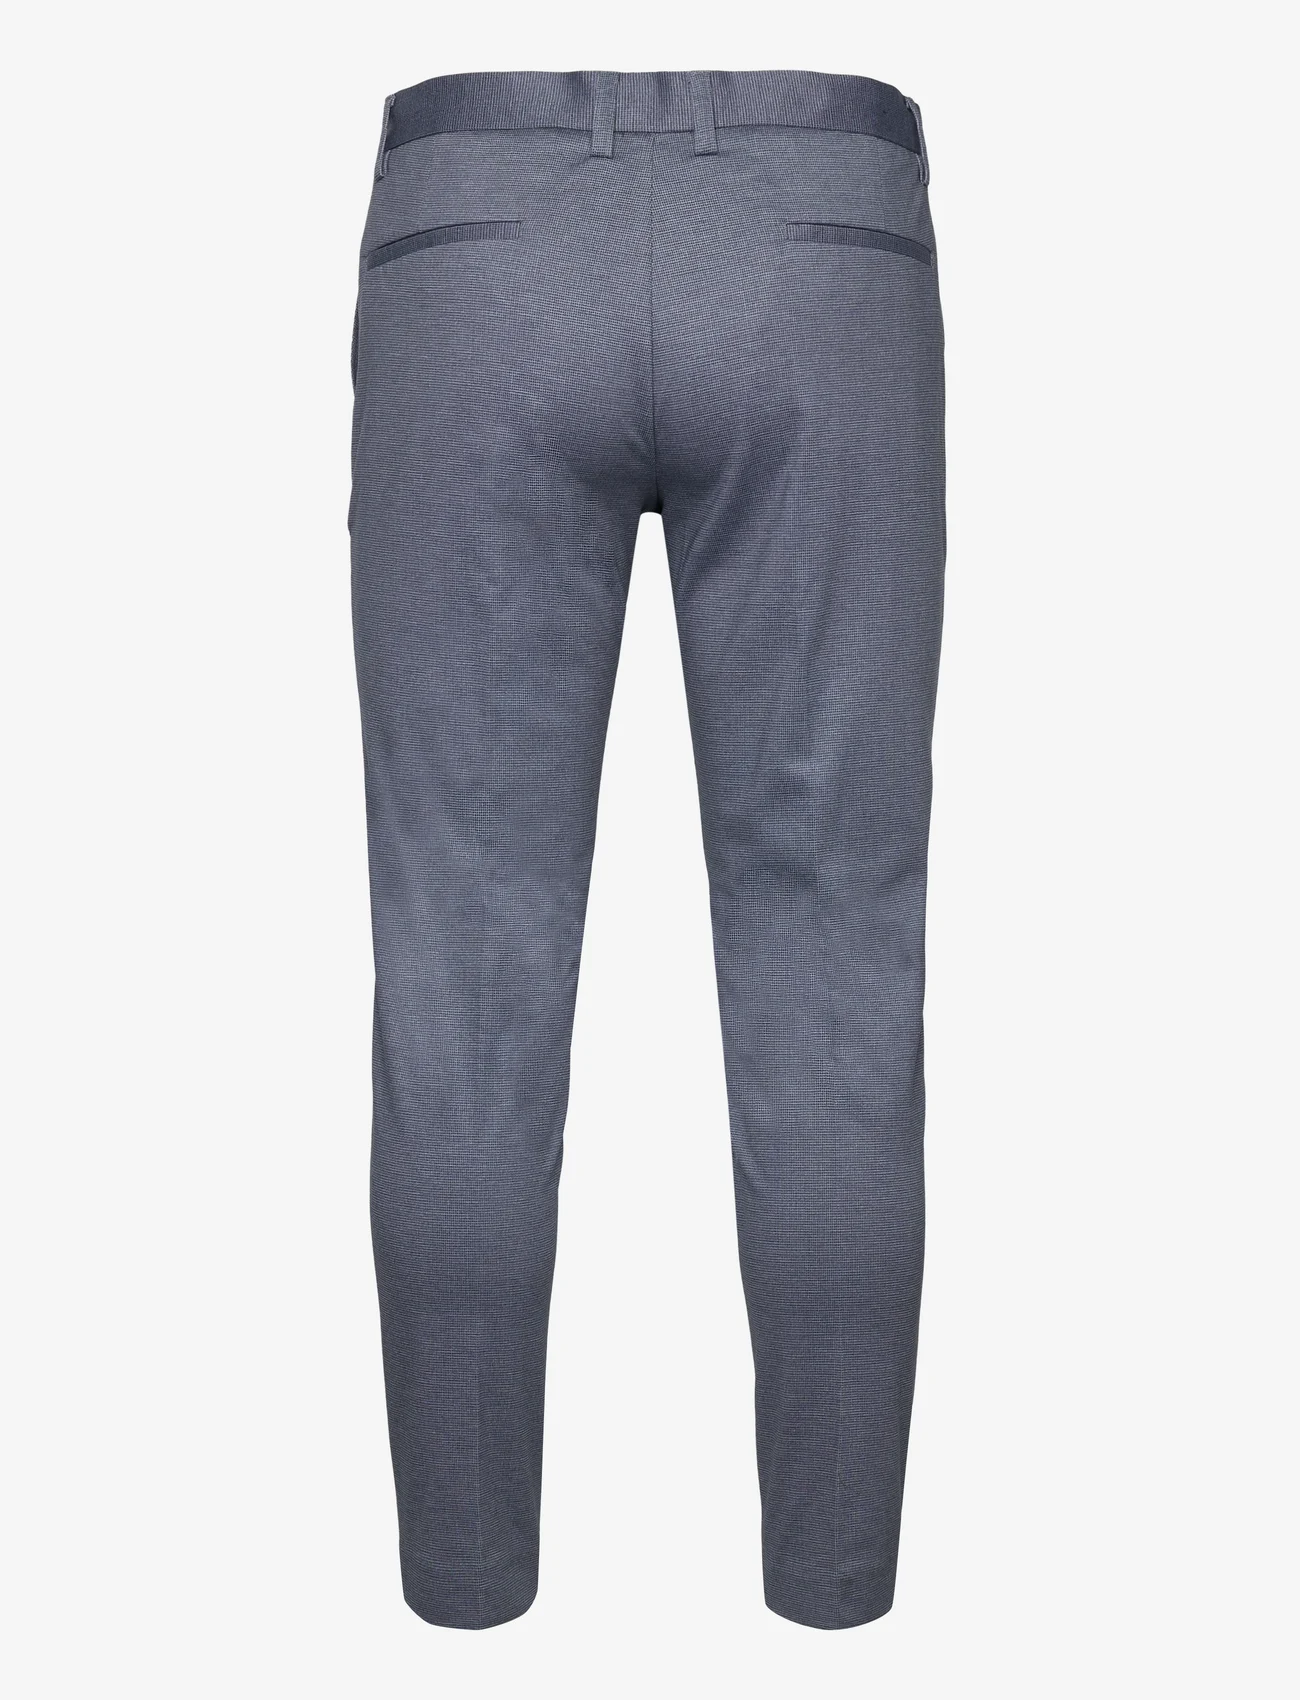 Lindbergh - Structure stretch club pants - puvunhousut - dk blue - 1